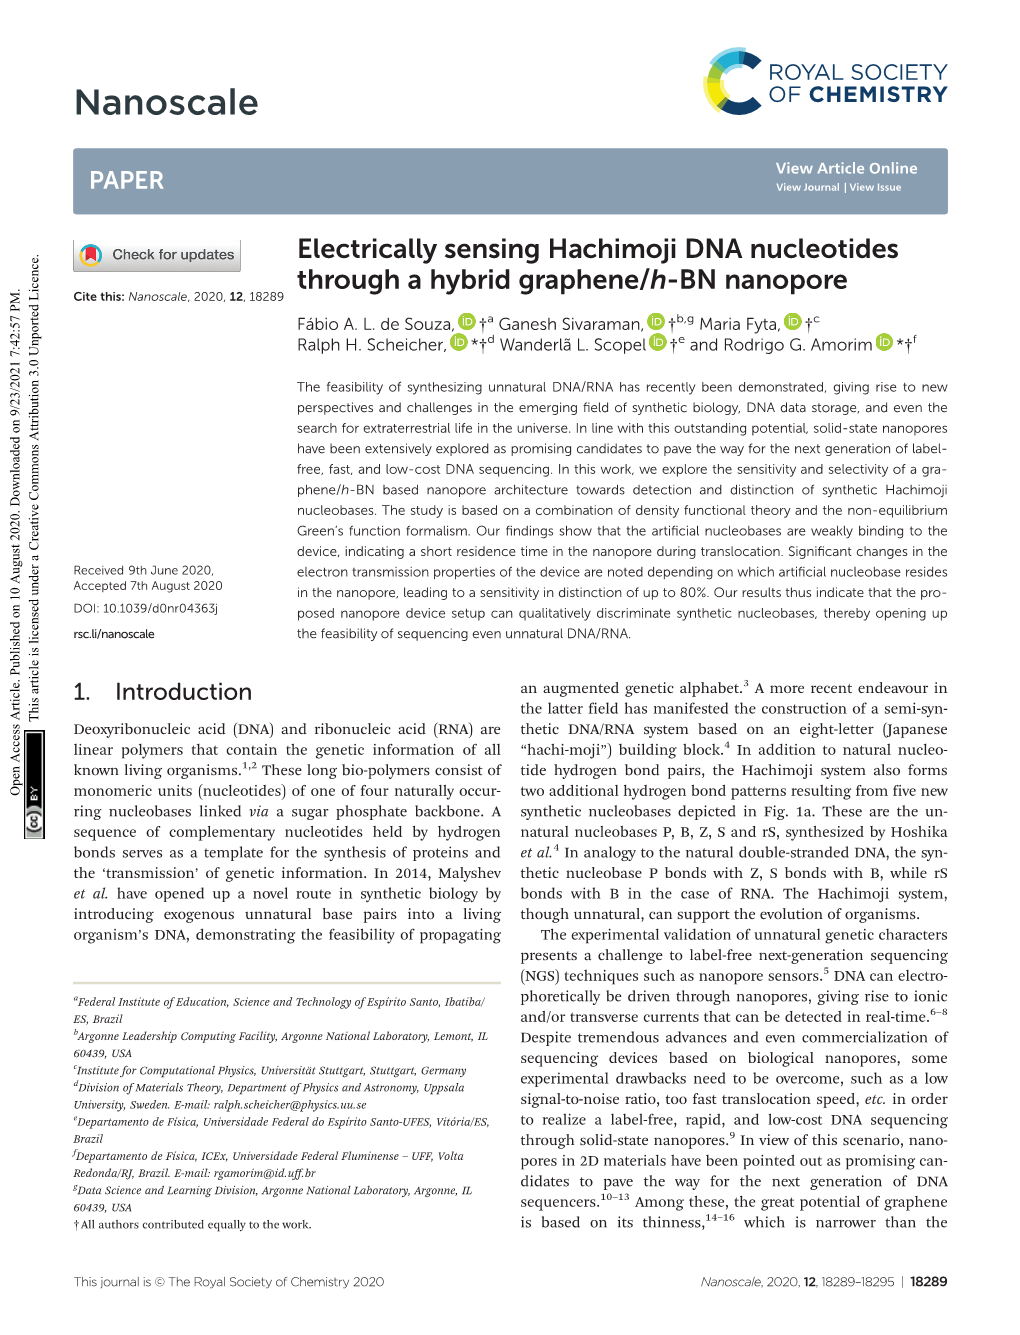 Electrically Sensing Hachimoji DNA Nucleotides Through a Hybrid Graphene/H-BN Nanopore Cite This: Nanoscale, 2020, 12, 18289 Fábio A